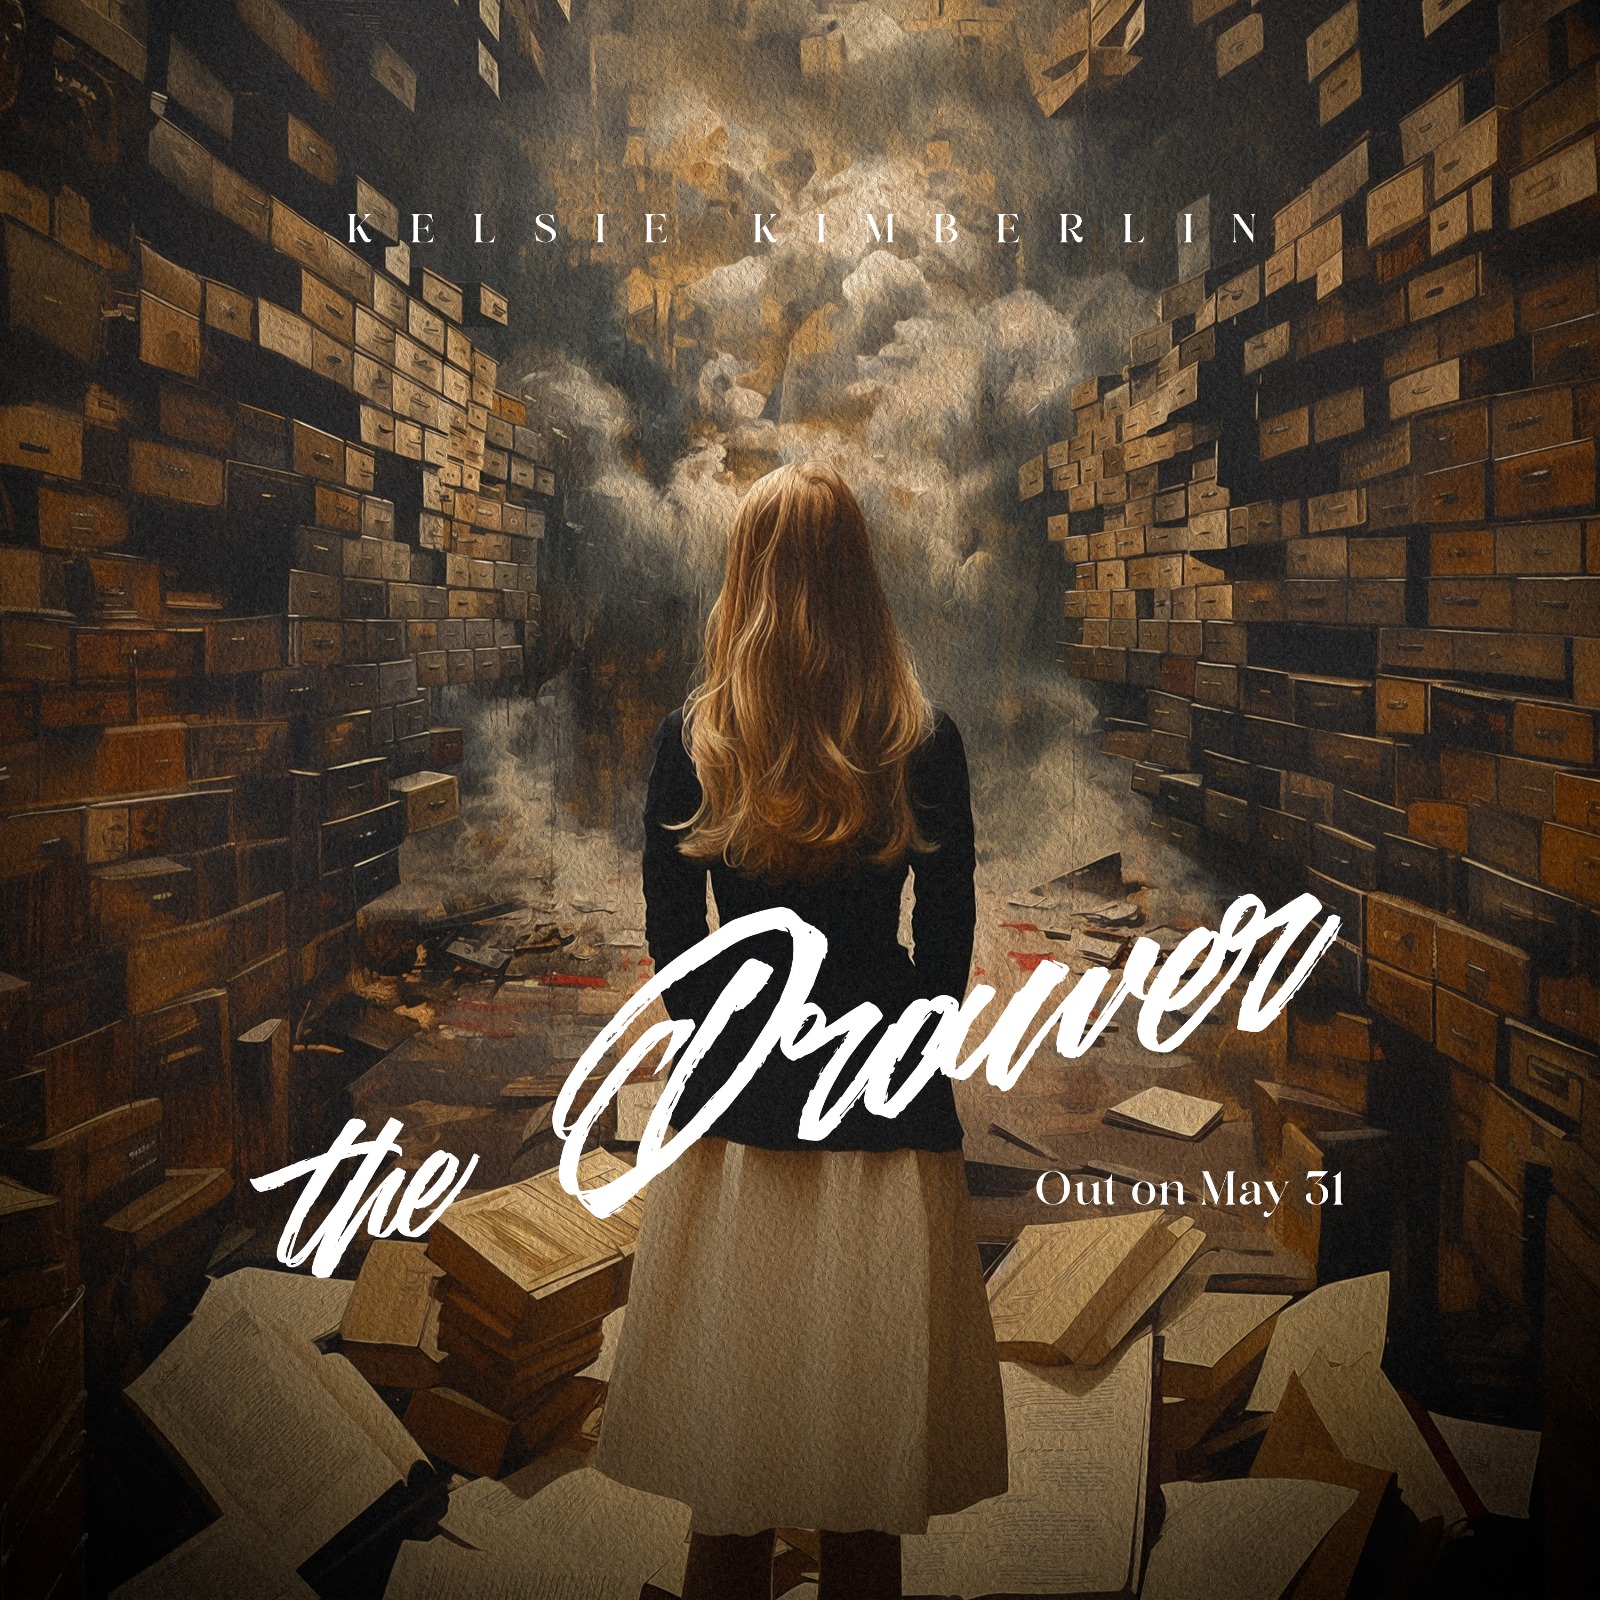  Kelsie Kimberlin deslumbra con su nuevo EP “The Drawer”: Una montaña rusa emocional